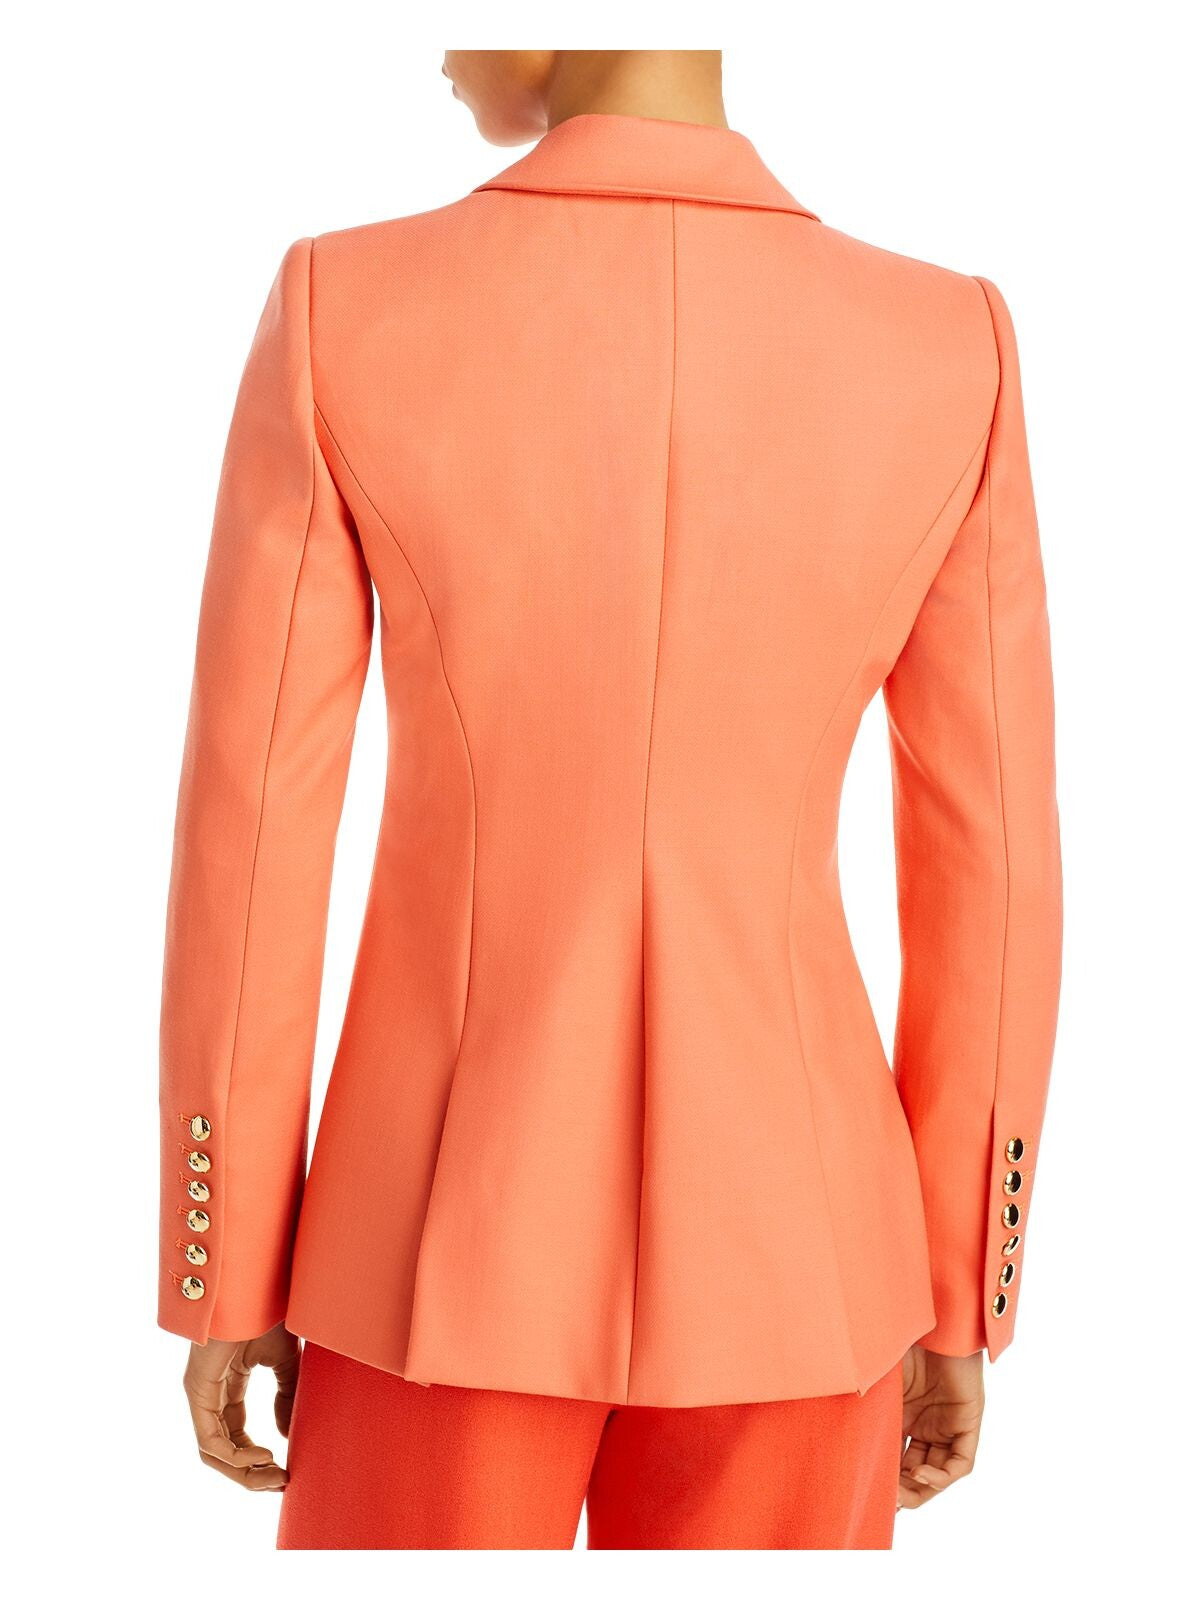 SERGIO HUDSON Womens Orange Textured Pocketed Lined Shoulder Pads Back Slits Wear To Work Blazer Jacket 10